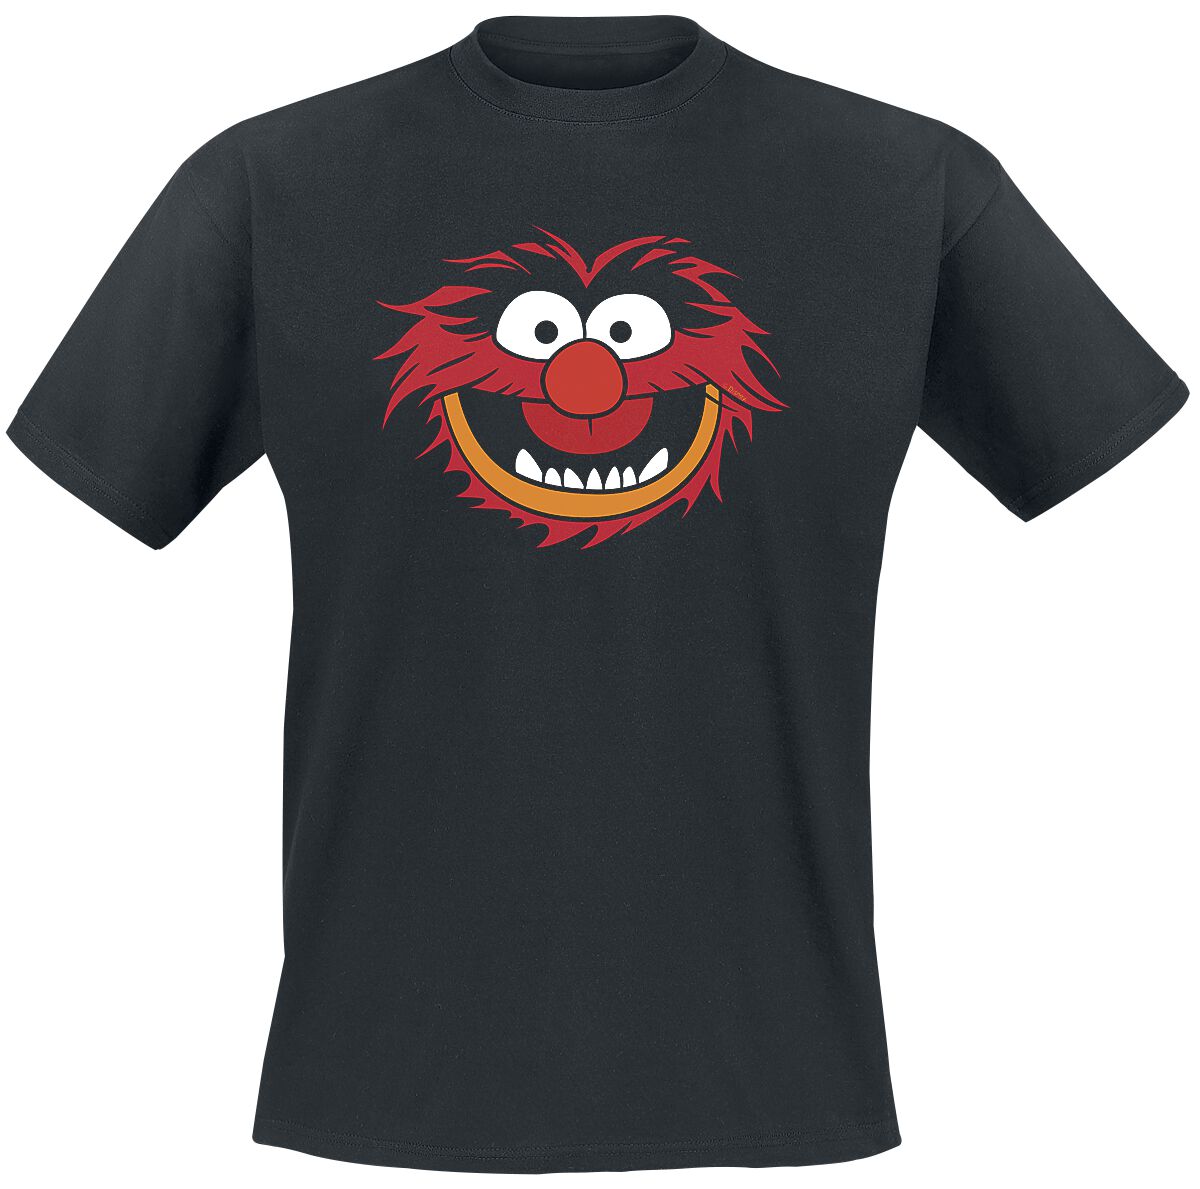 Die Muppets T-Shirt - Animal - Gesicht - S bis XXL - für Männer - Größe XXL - schwarz  - Lizenzierter Fanartikel